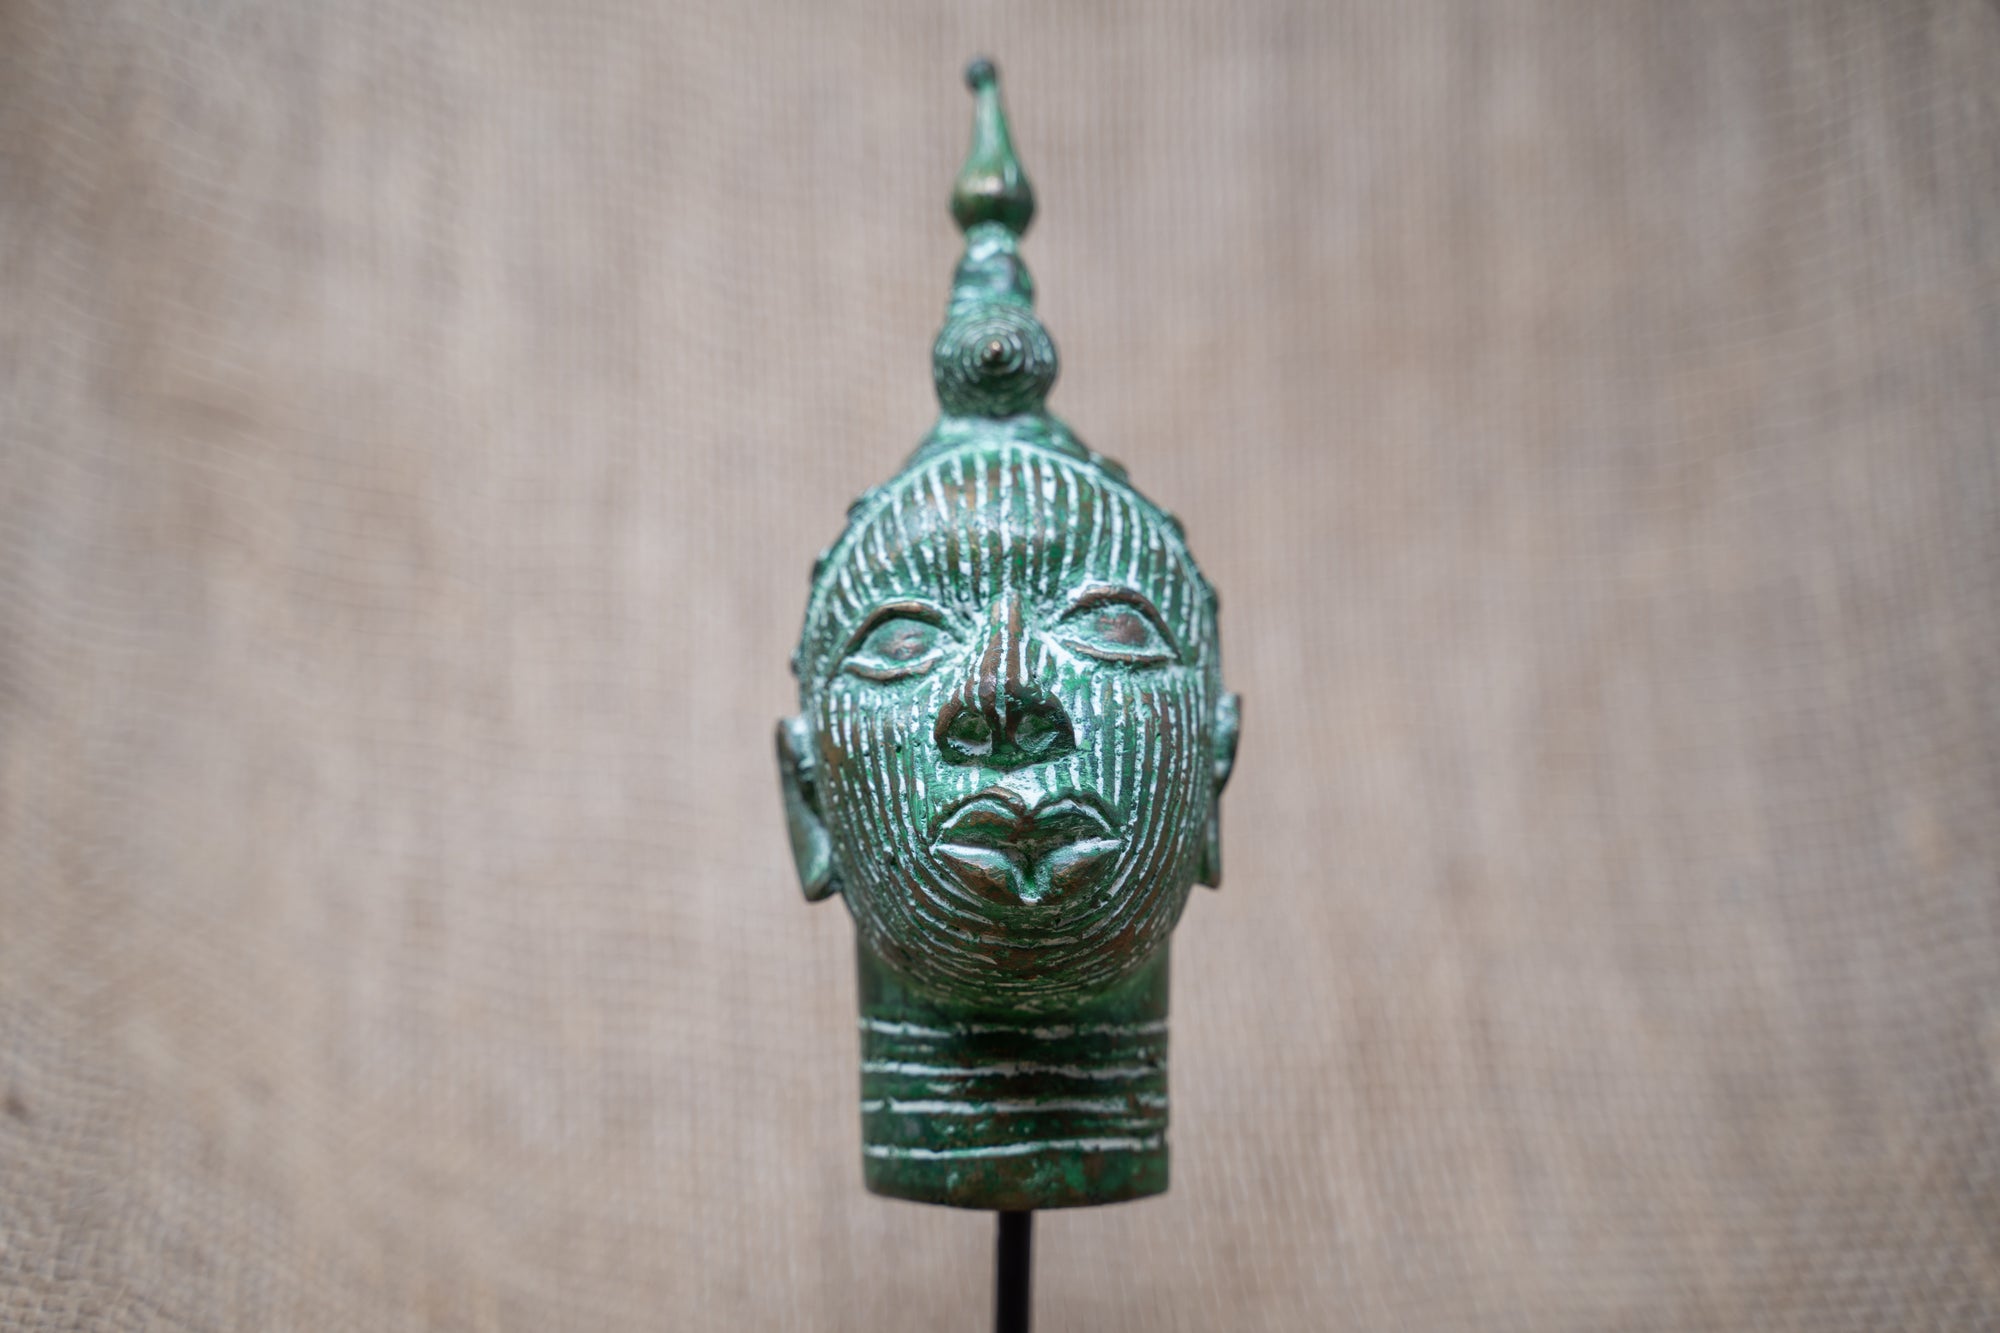 Benin Bronze Head - 37.3